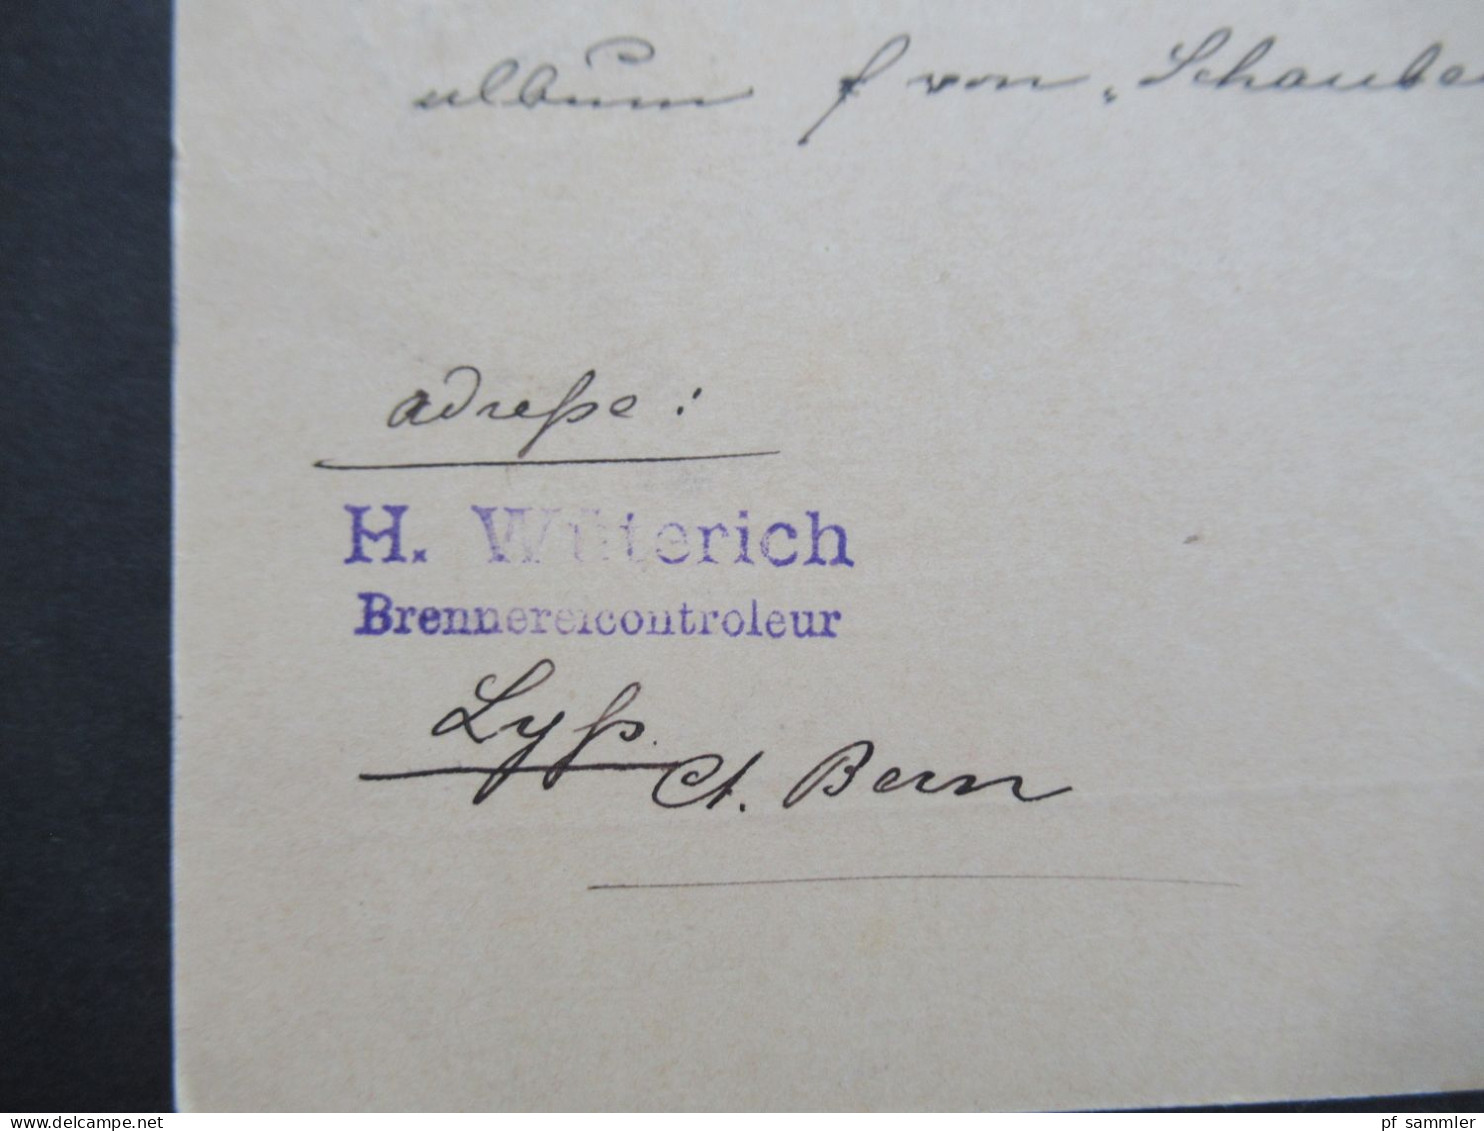 Schweiz 1889 Ganzsache Stempel Lyss über Bern Nach Leipzig Absender Stp. H. Wüterich Brennereicontroleur - Ganzsachen